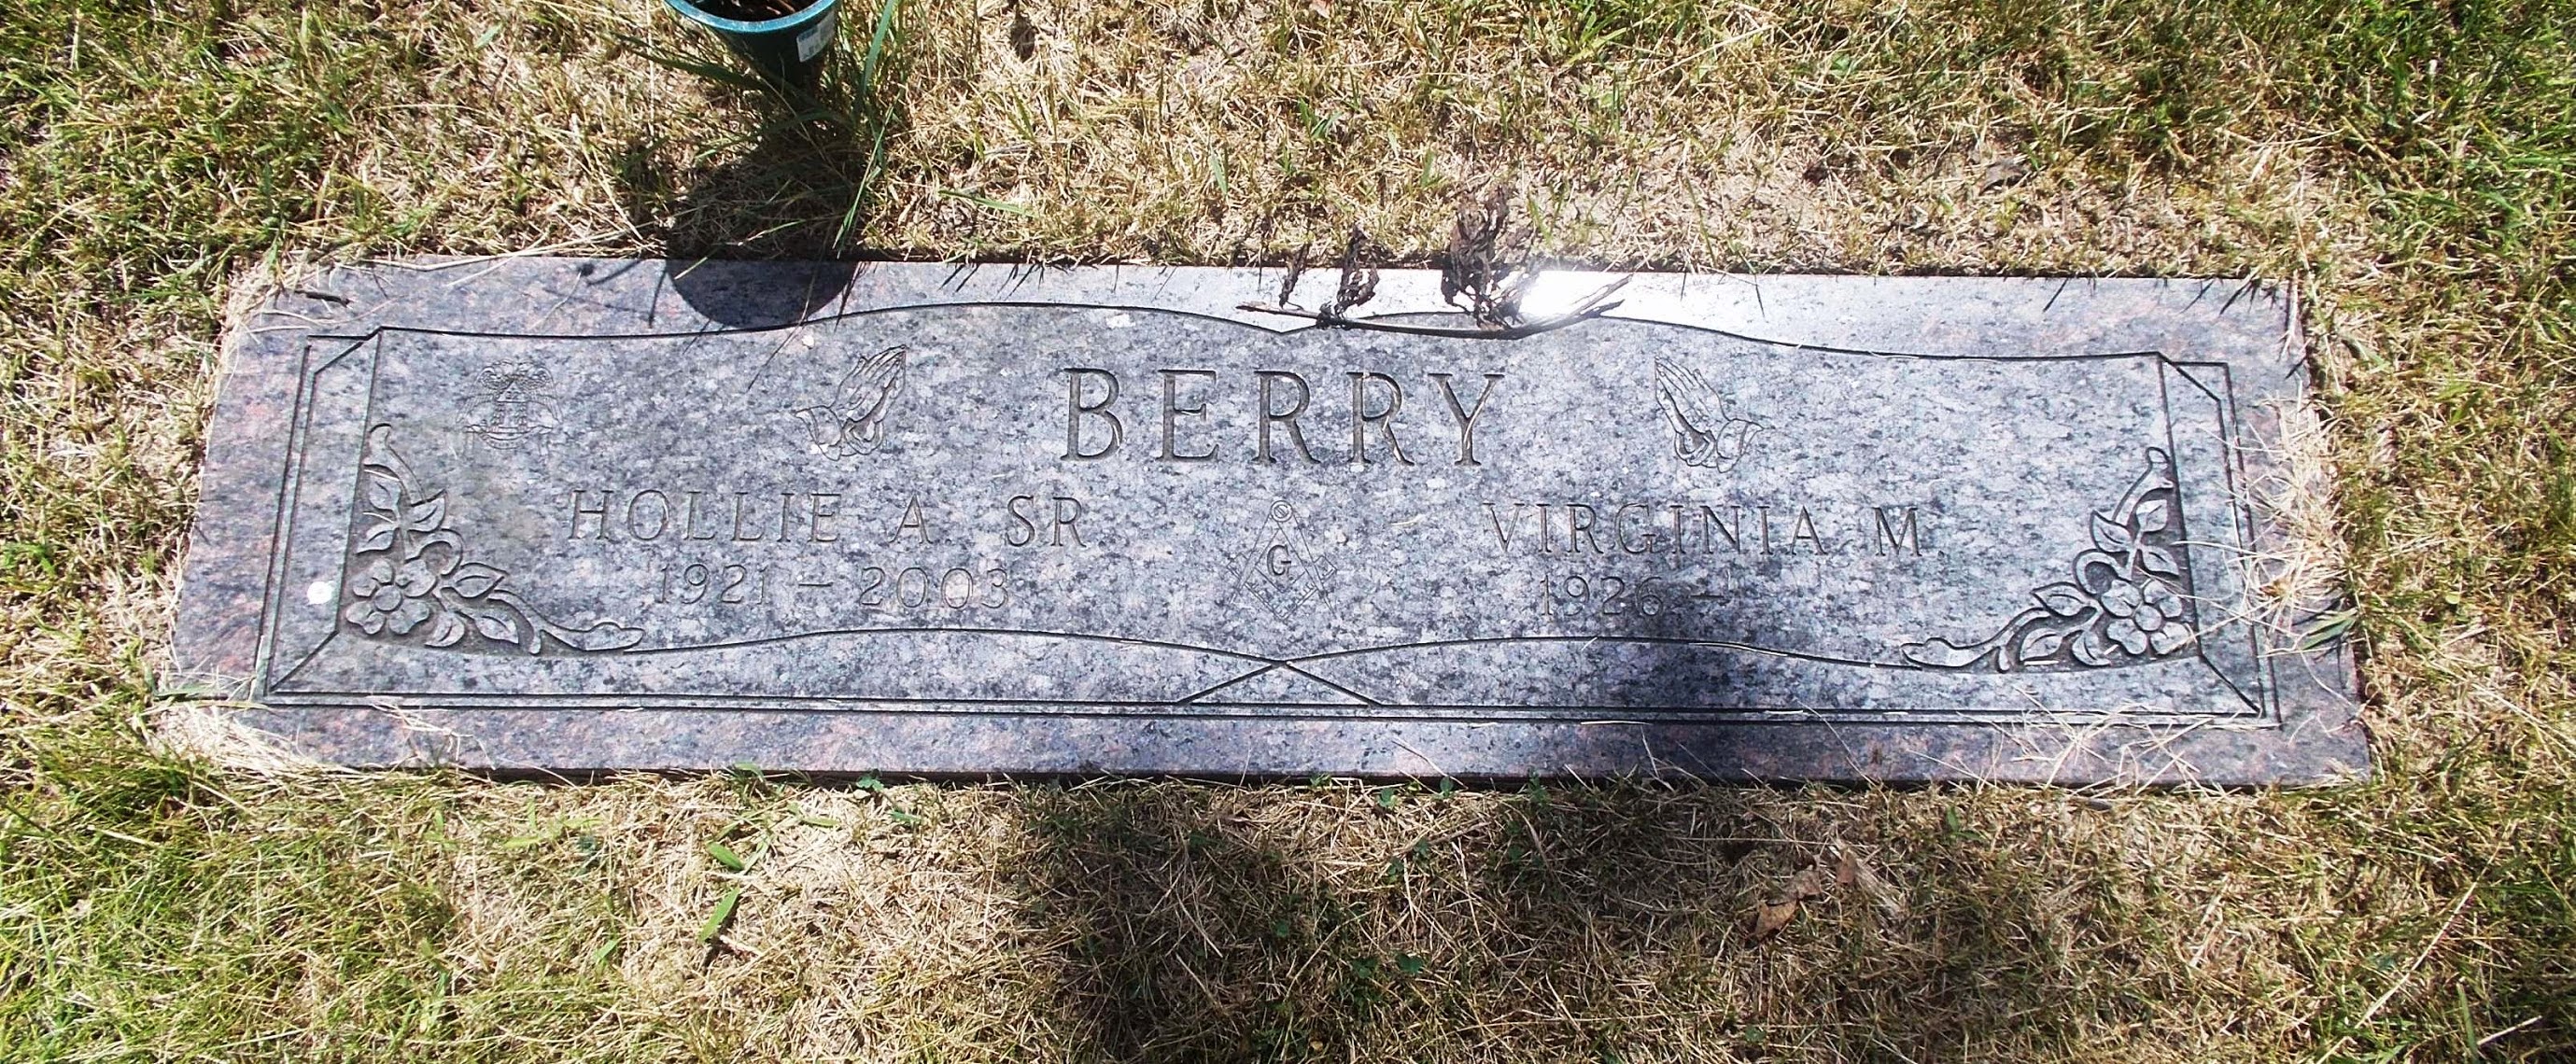 Virginia M Berry